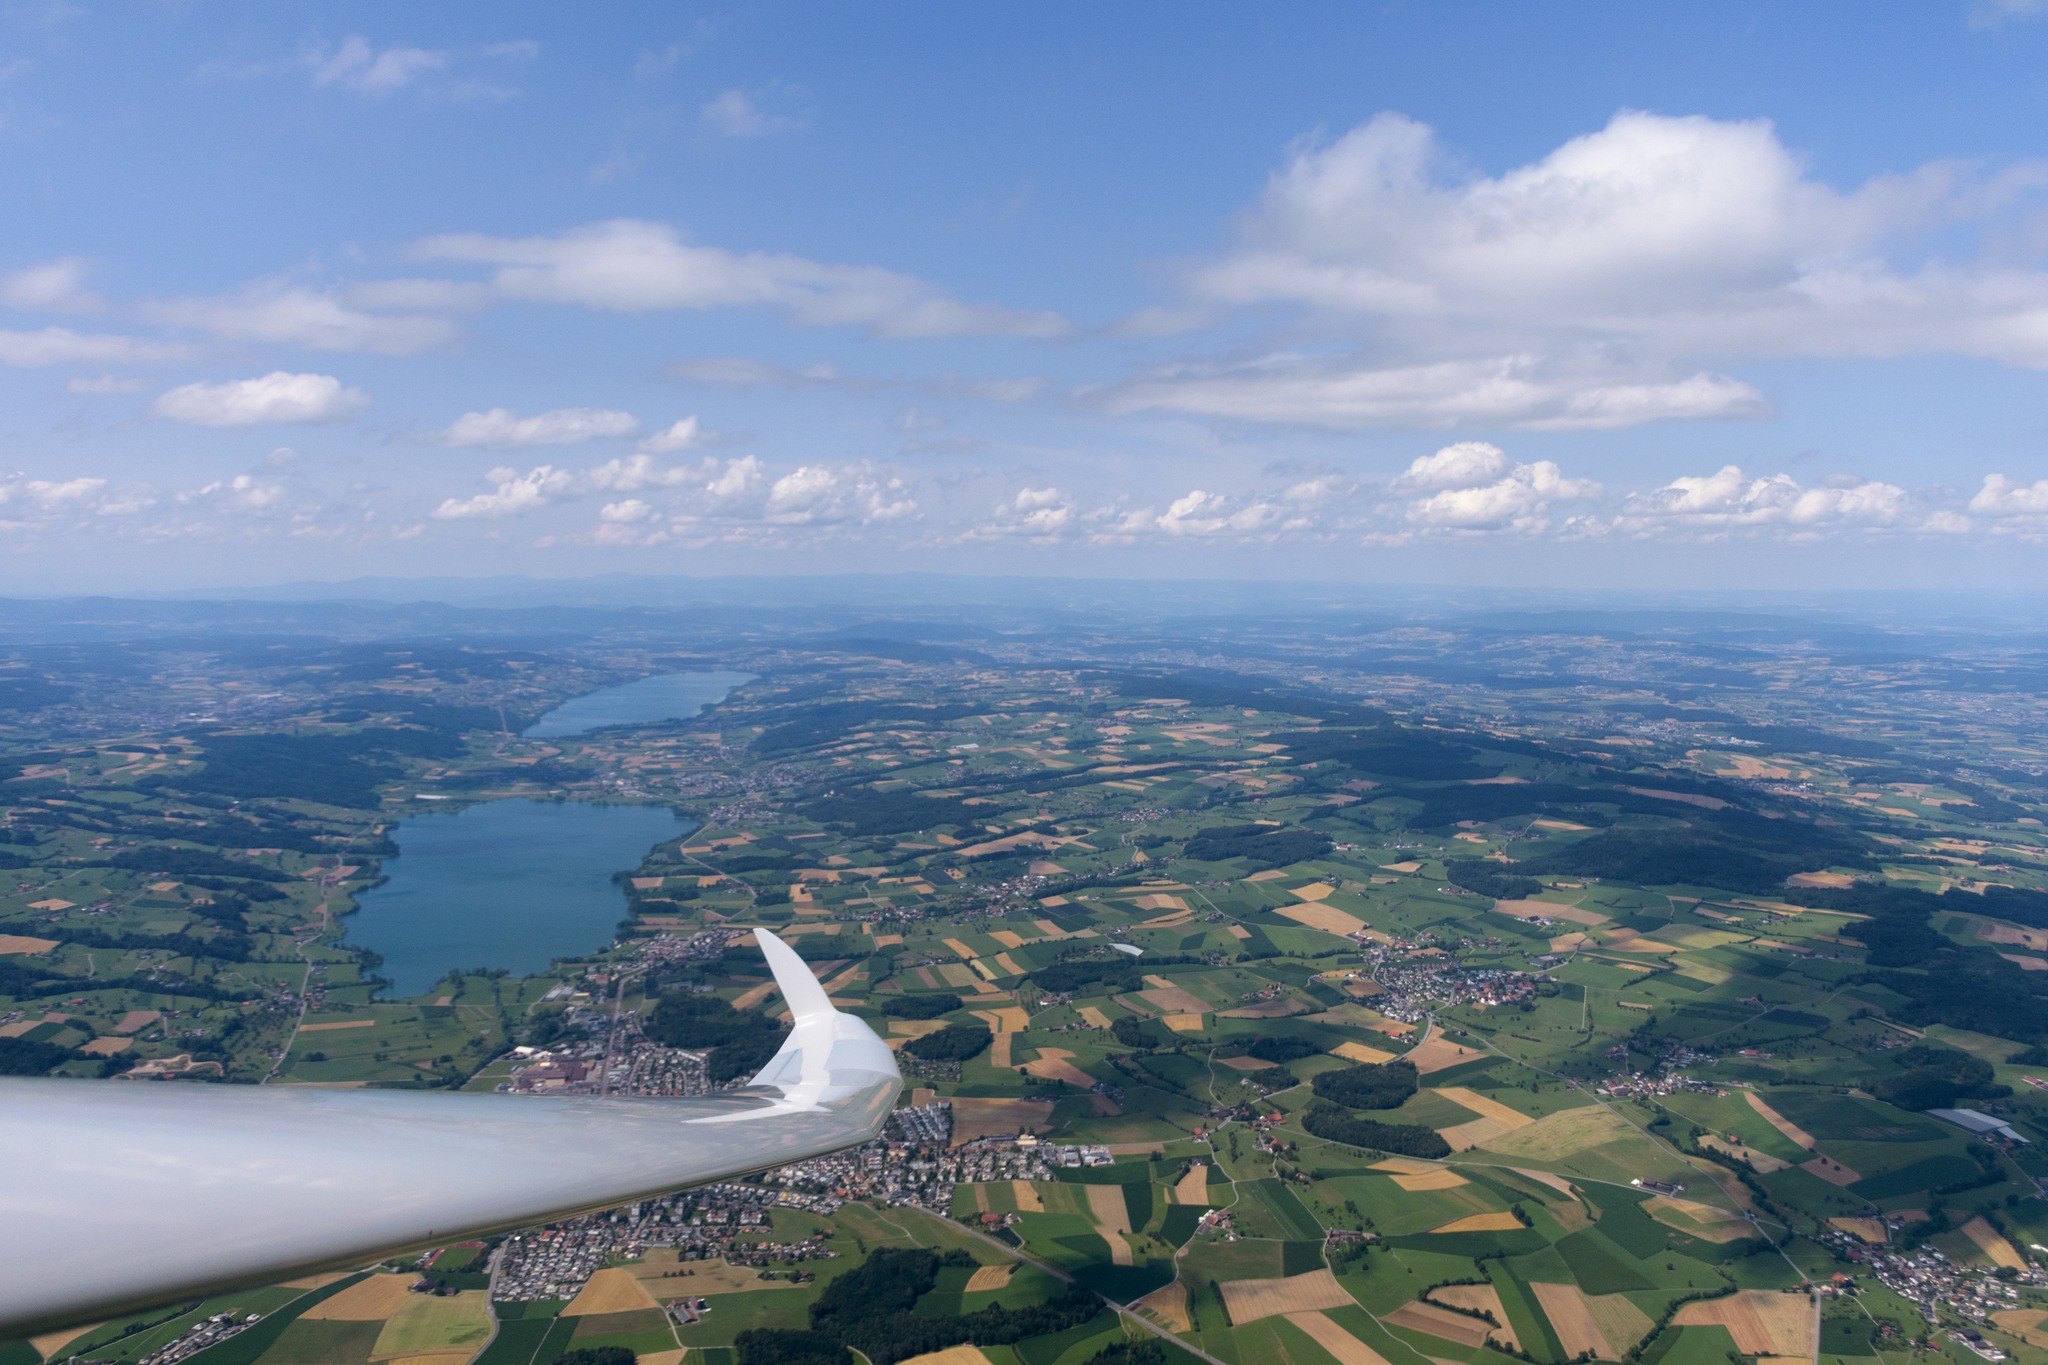 A view over the flatland part of switzerland #soaring #segelflug #segelfliegen #volavoile #glidingpictures #pilotlife #discus2 #schempphirth #aviation #sfvs_fsvv #sgzuerich @sg_zuerich